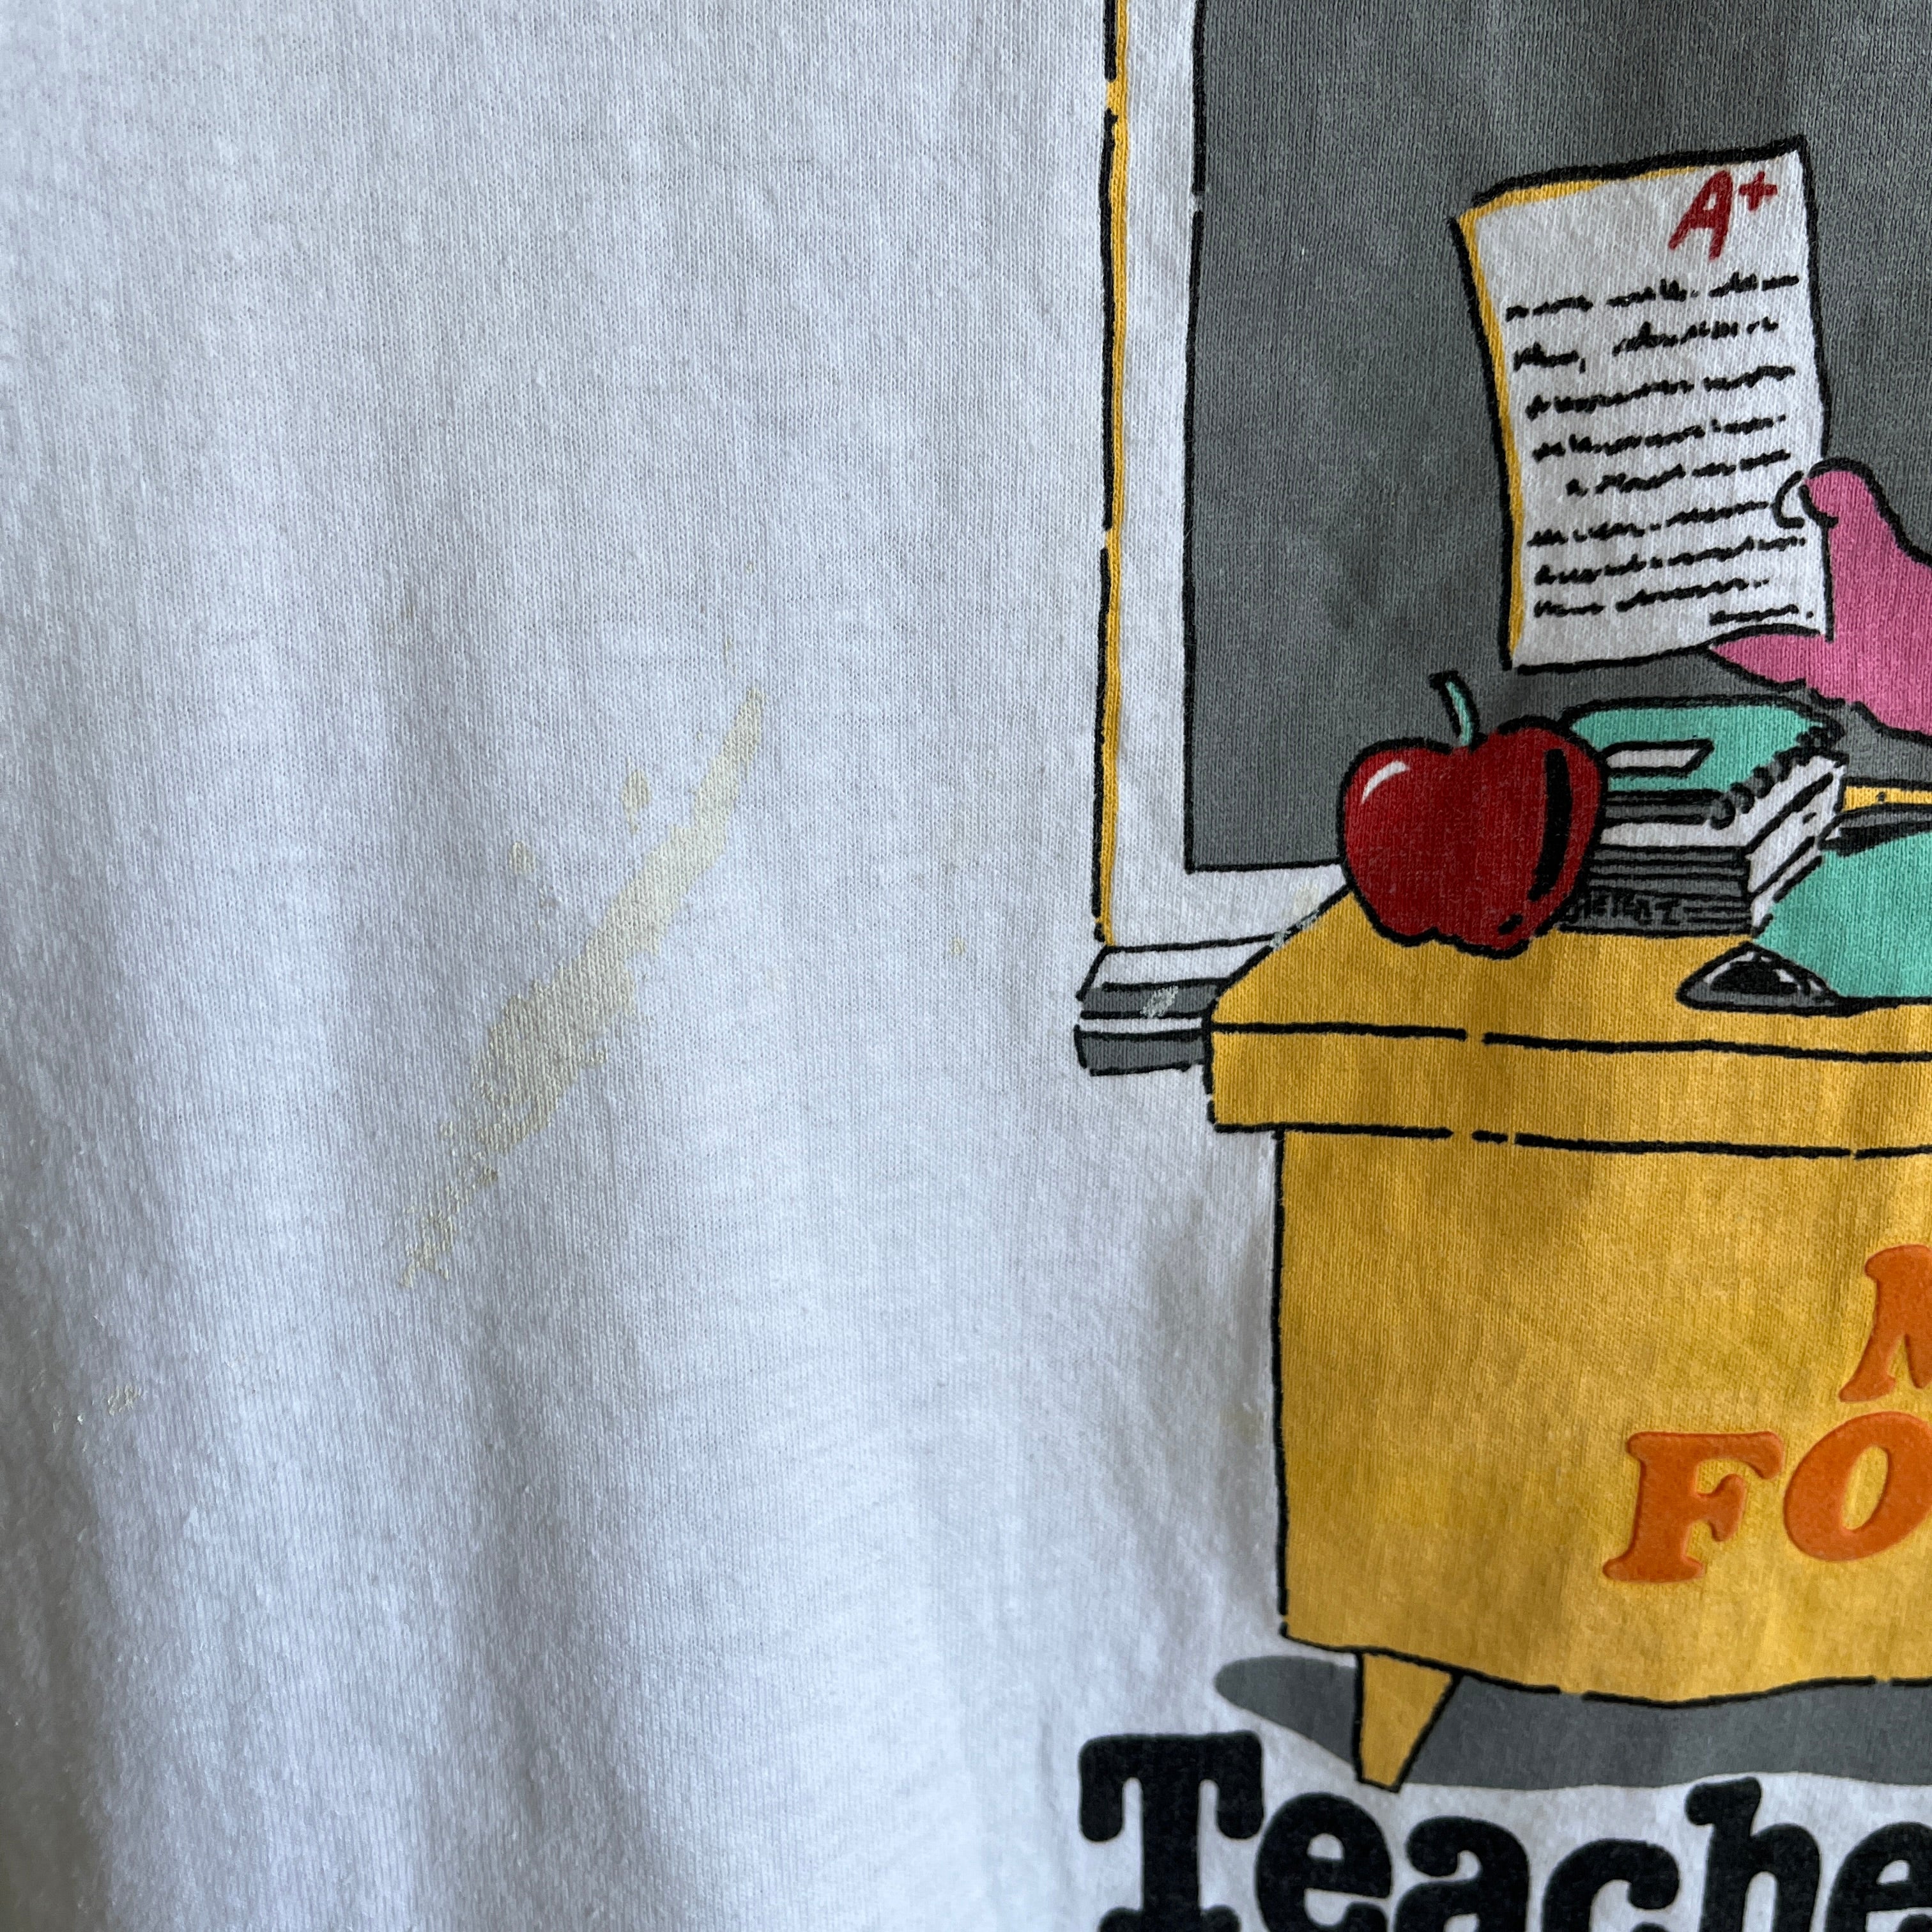 1987 Teacherasaurus Mme Forester DIY T-shirt